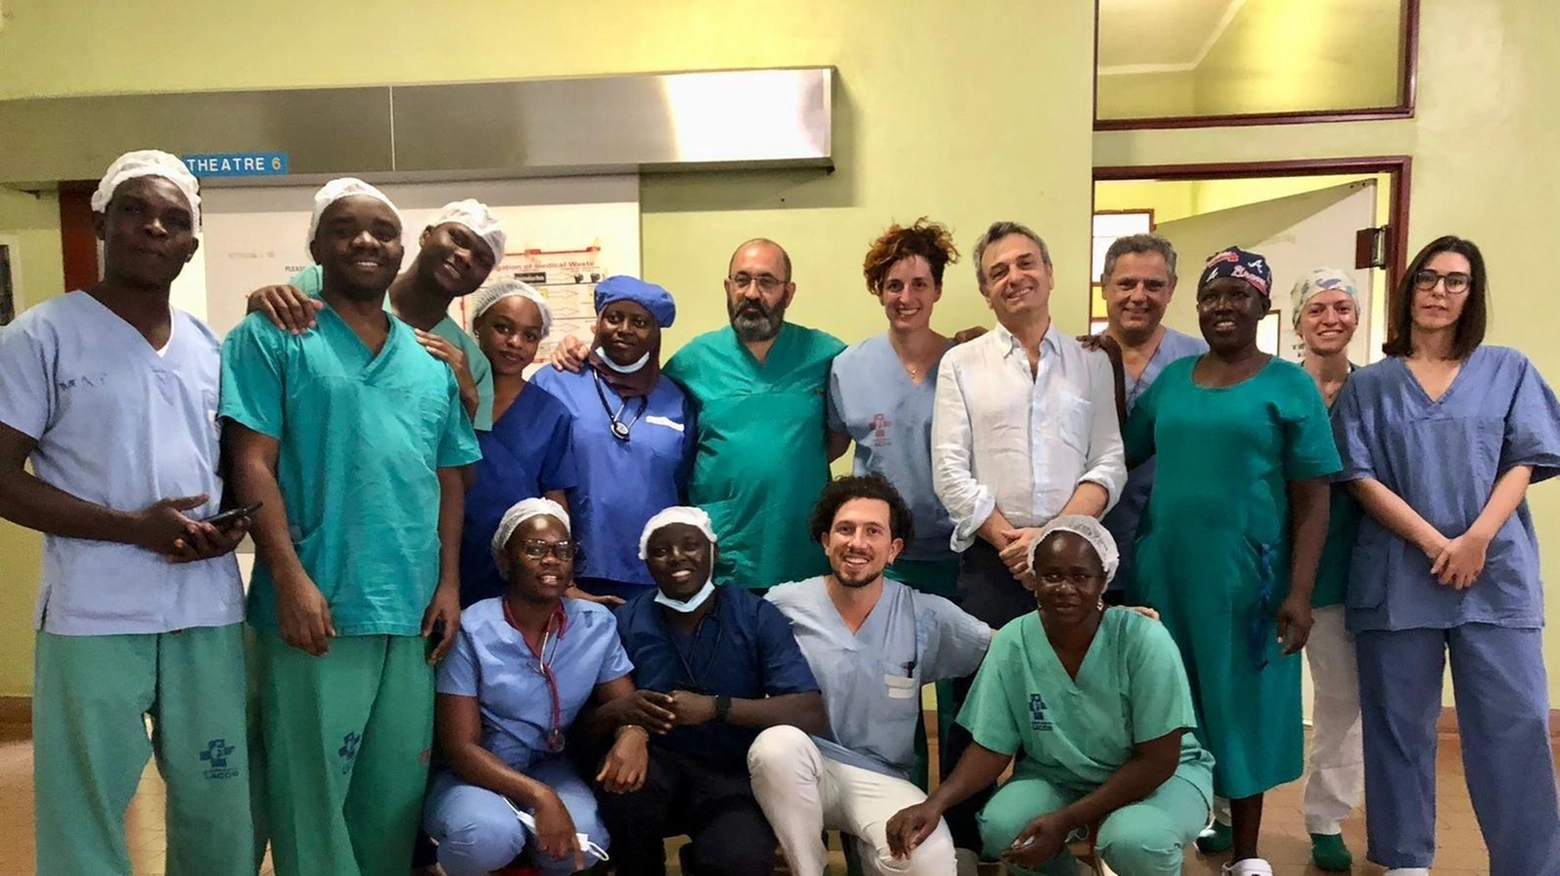 Medici toscani rientrati da missione chirurgica in Uganda all'Ospedale Mary’s Lacor Hospital a Gulu. Progetto di miglioramento delle capacità diagnostiche sostenuto dalla Toscana da oltre 10 anni.